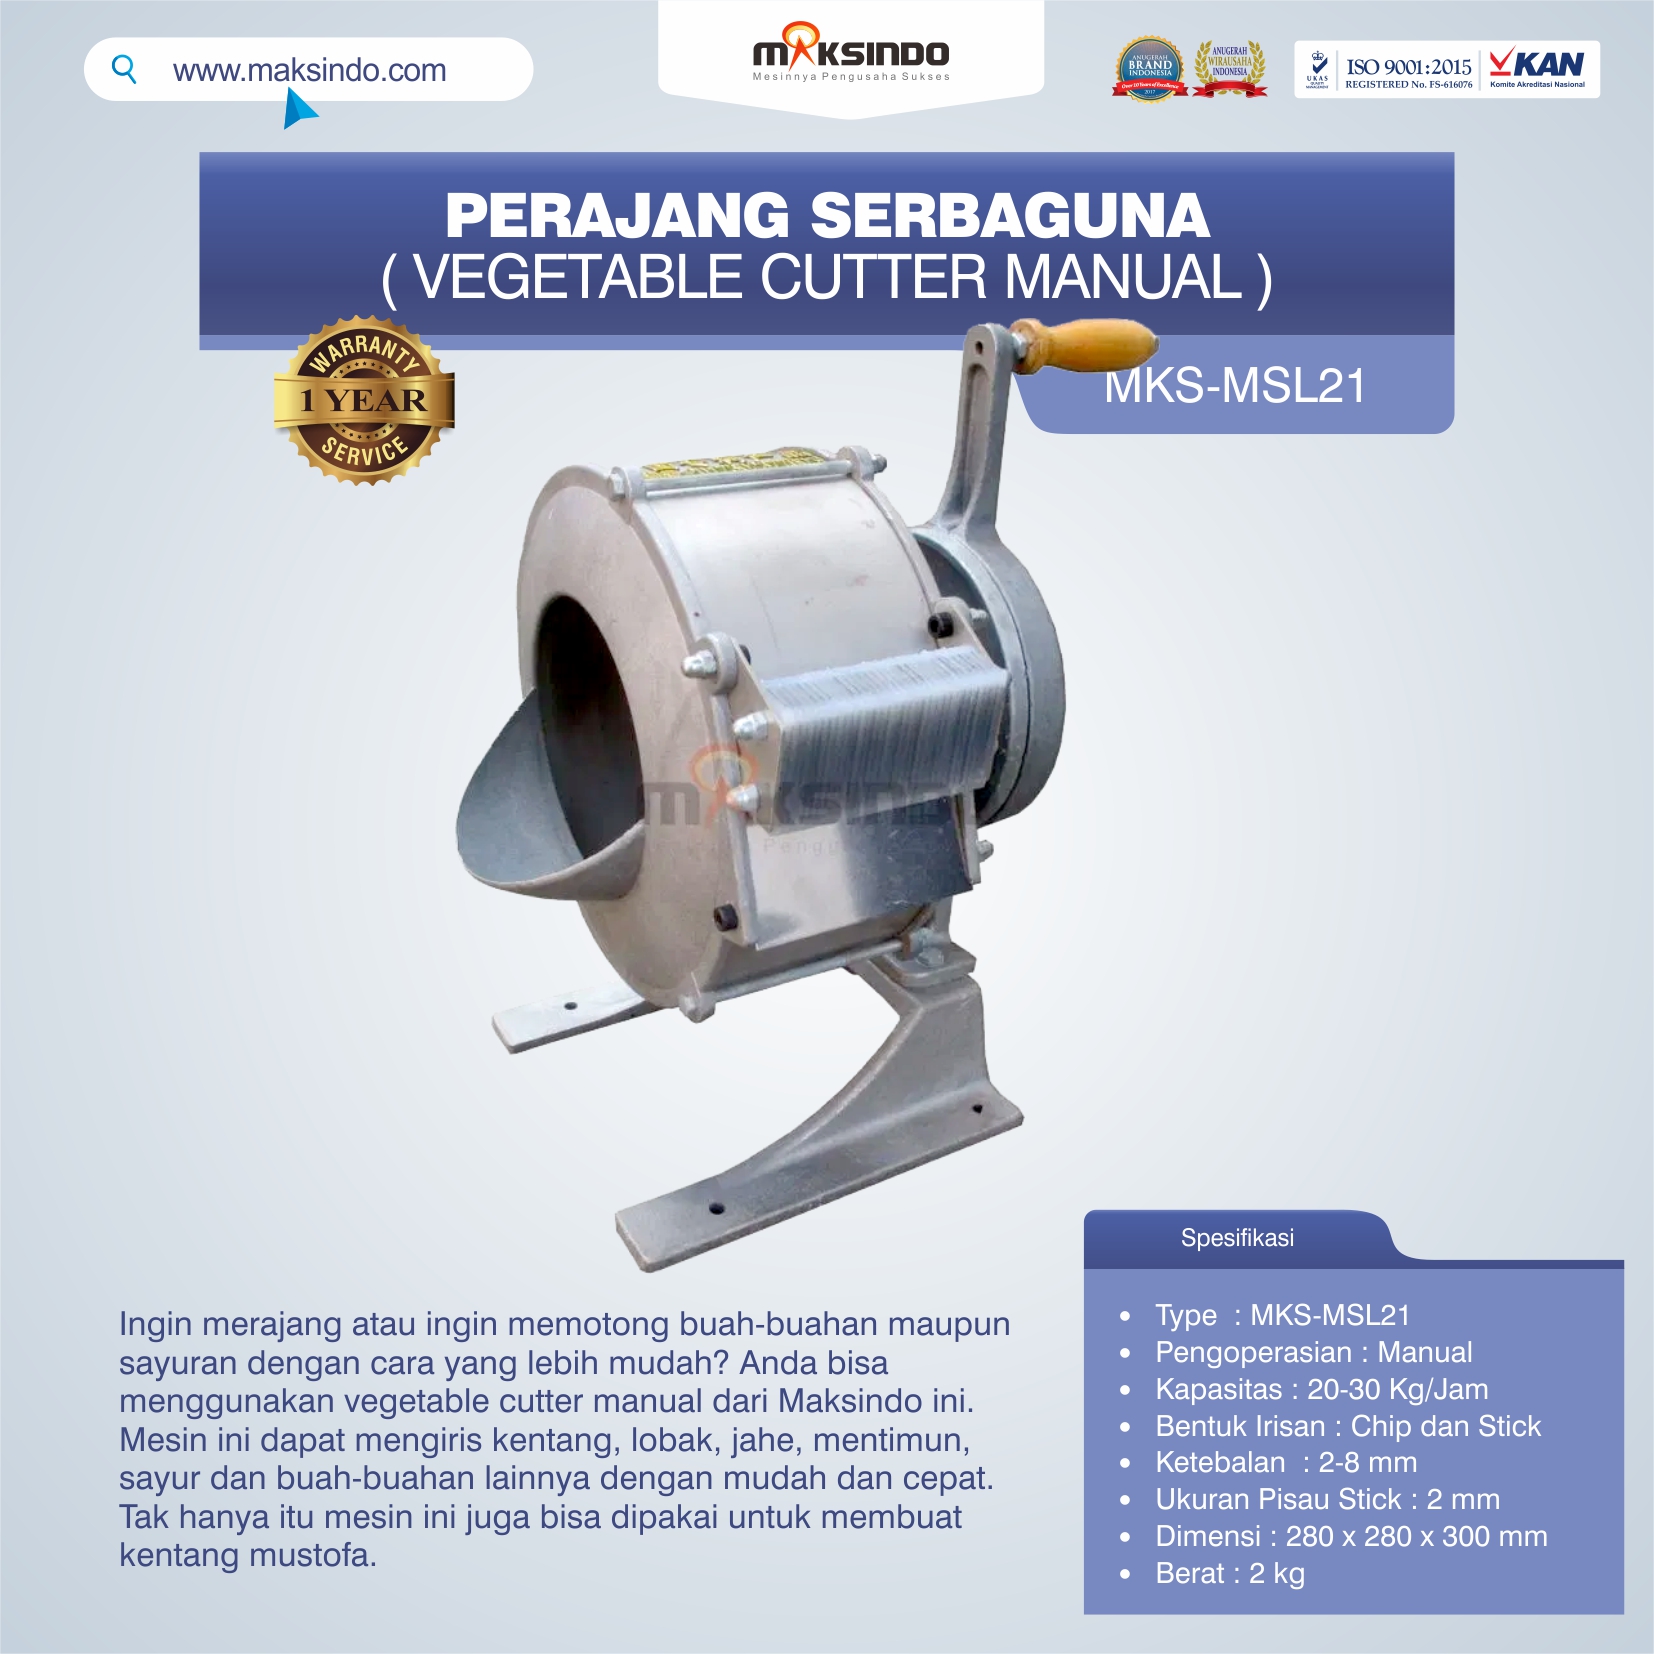 Jual Vegetable Cutter Manual MKS-MSL21 Di Medan